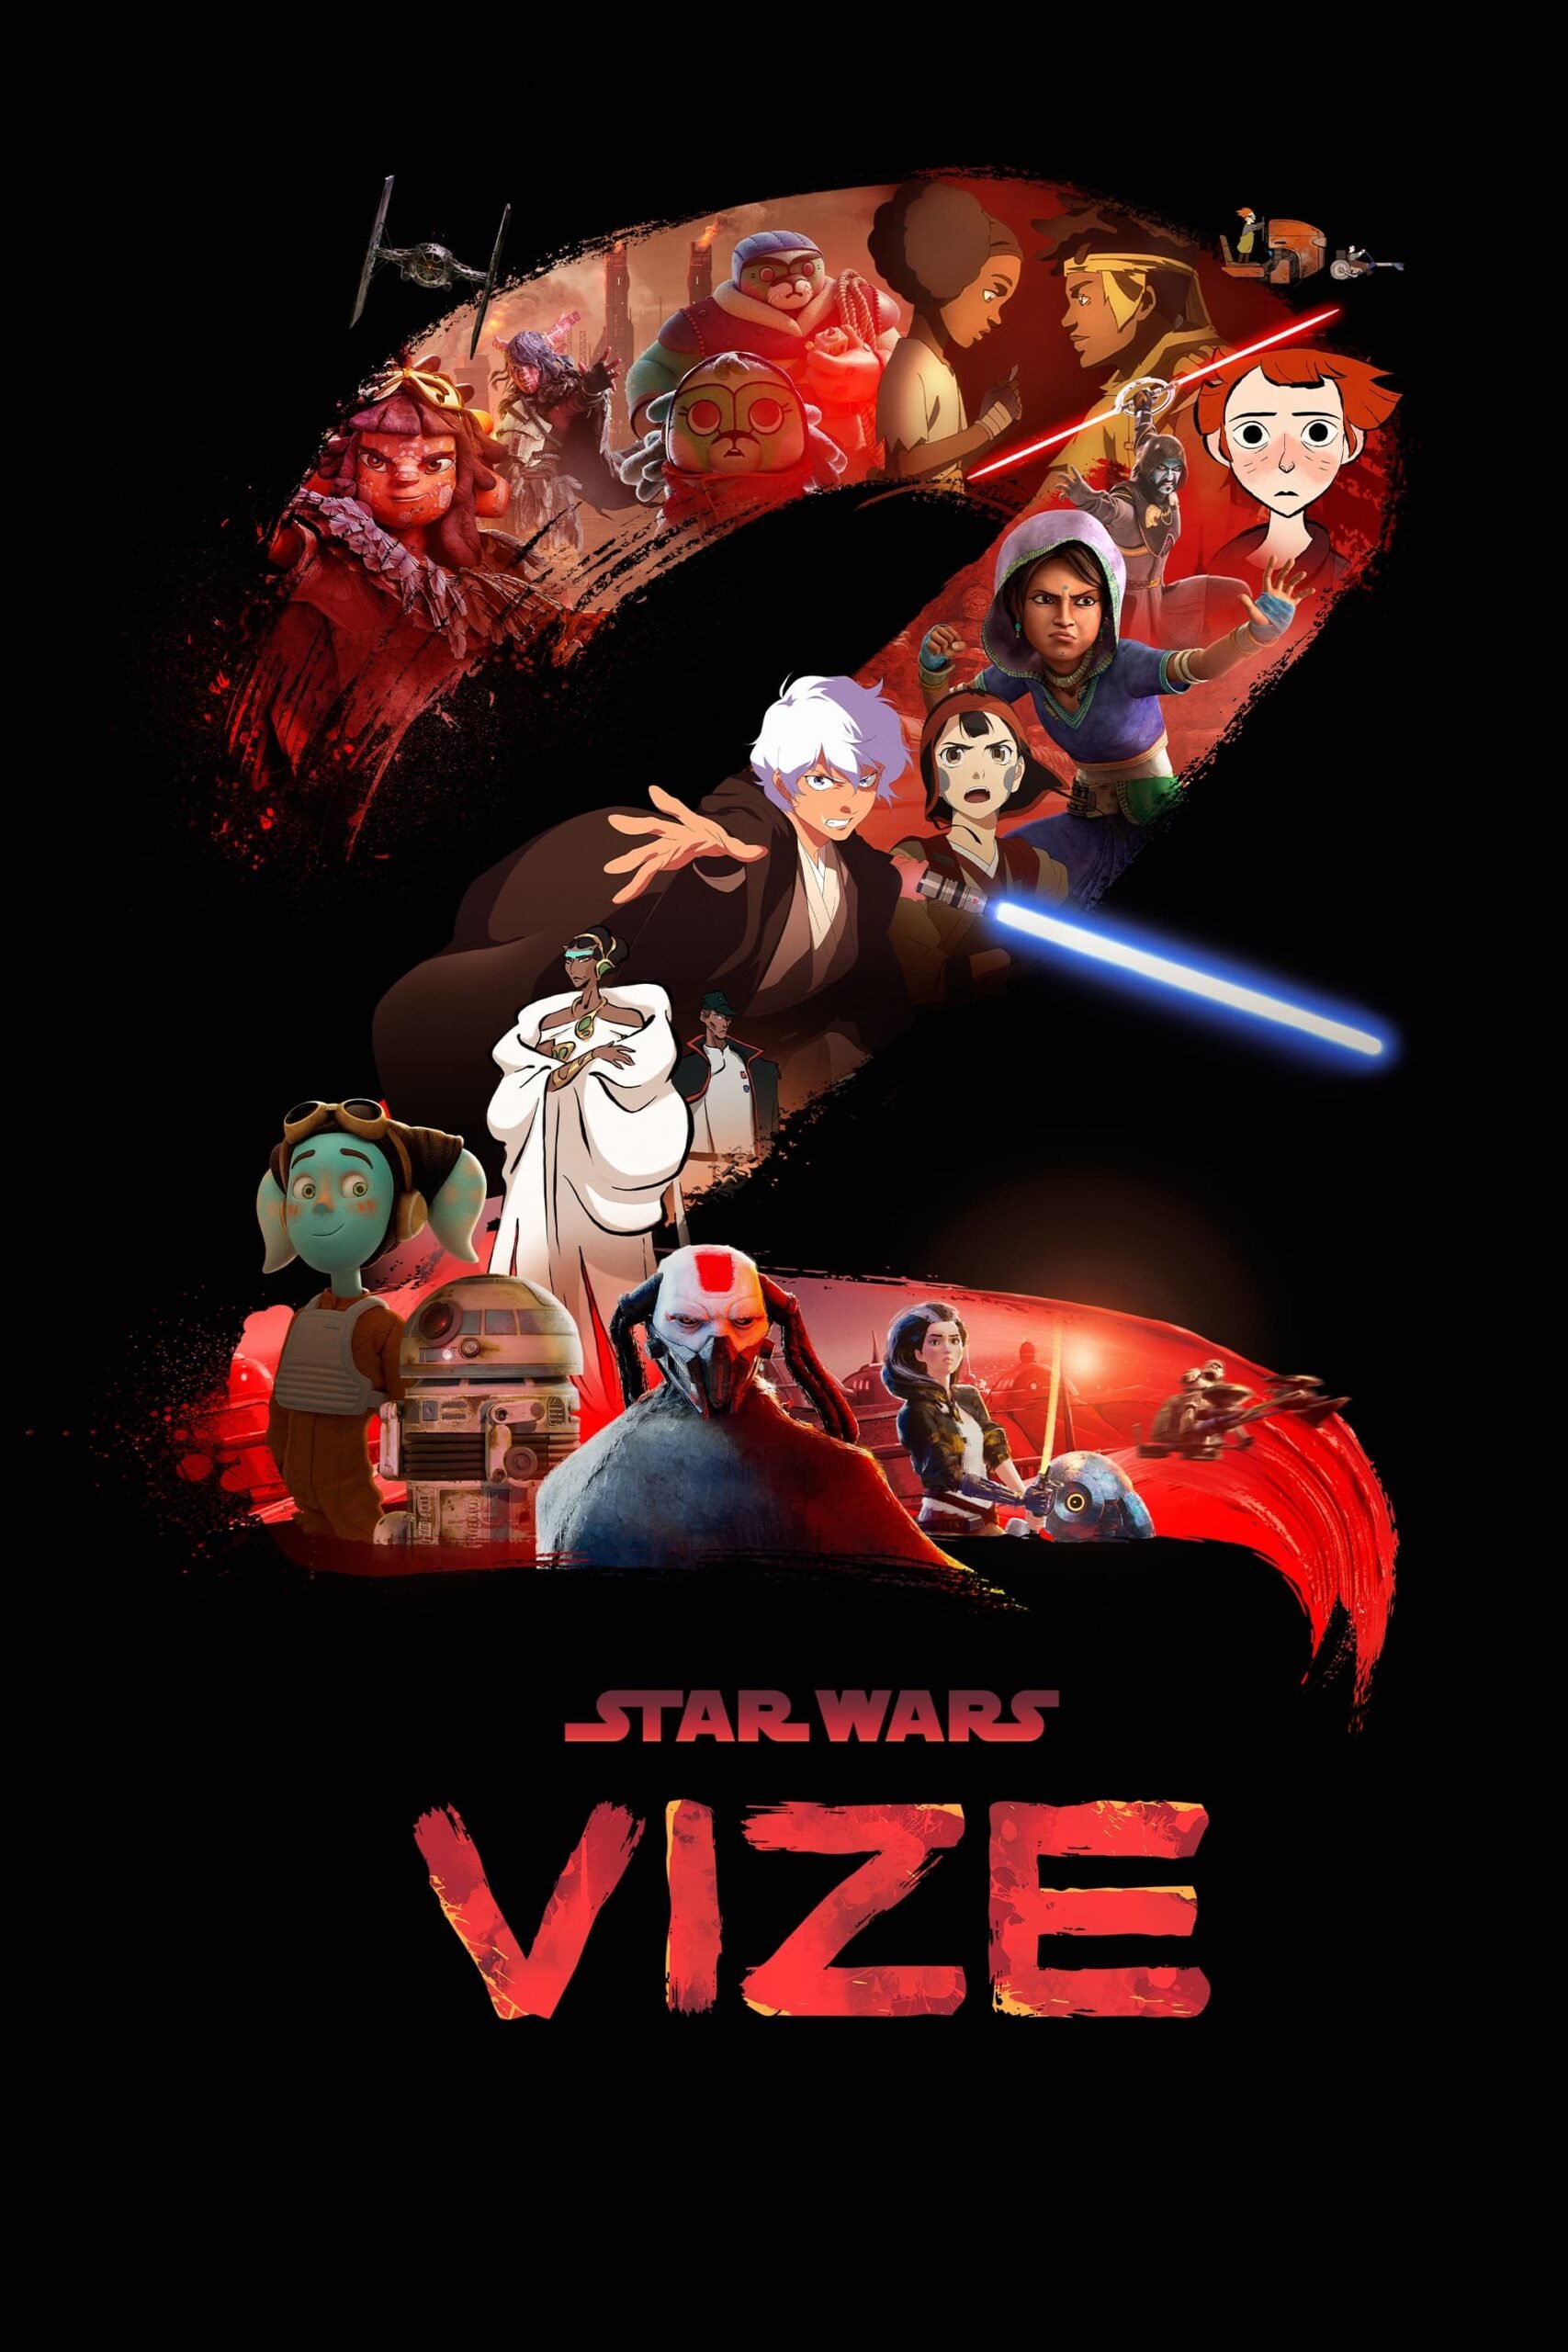 Plakát pro film “Star Wars: Vize”